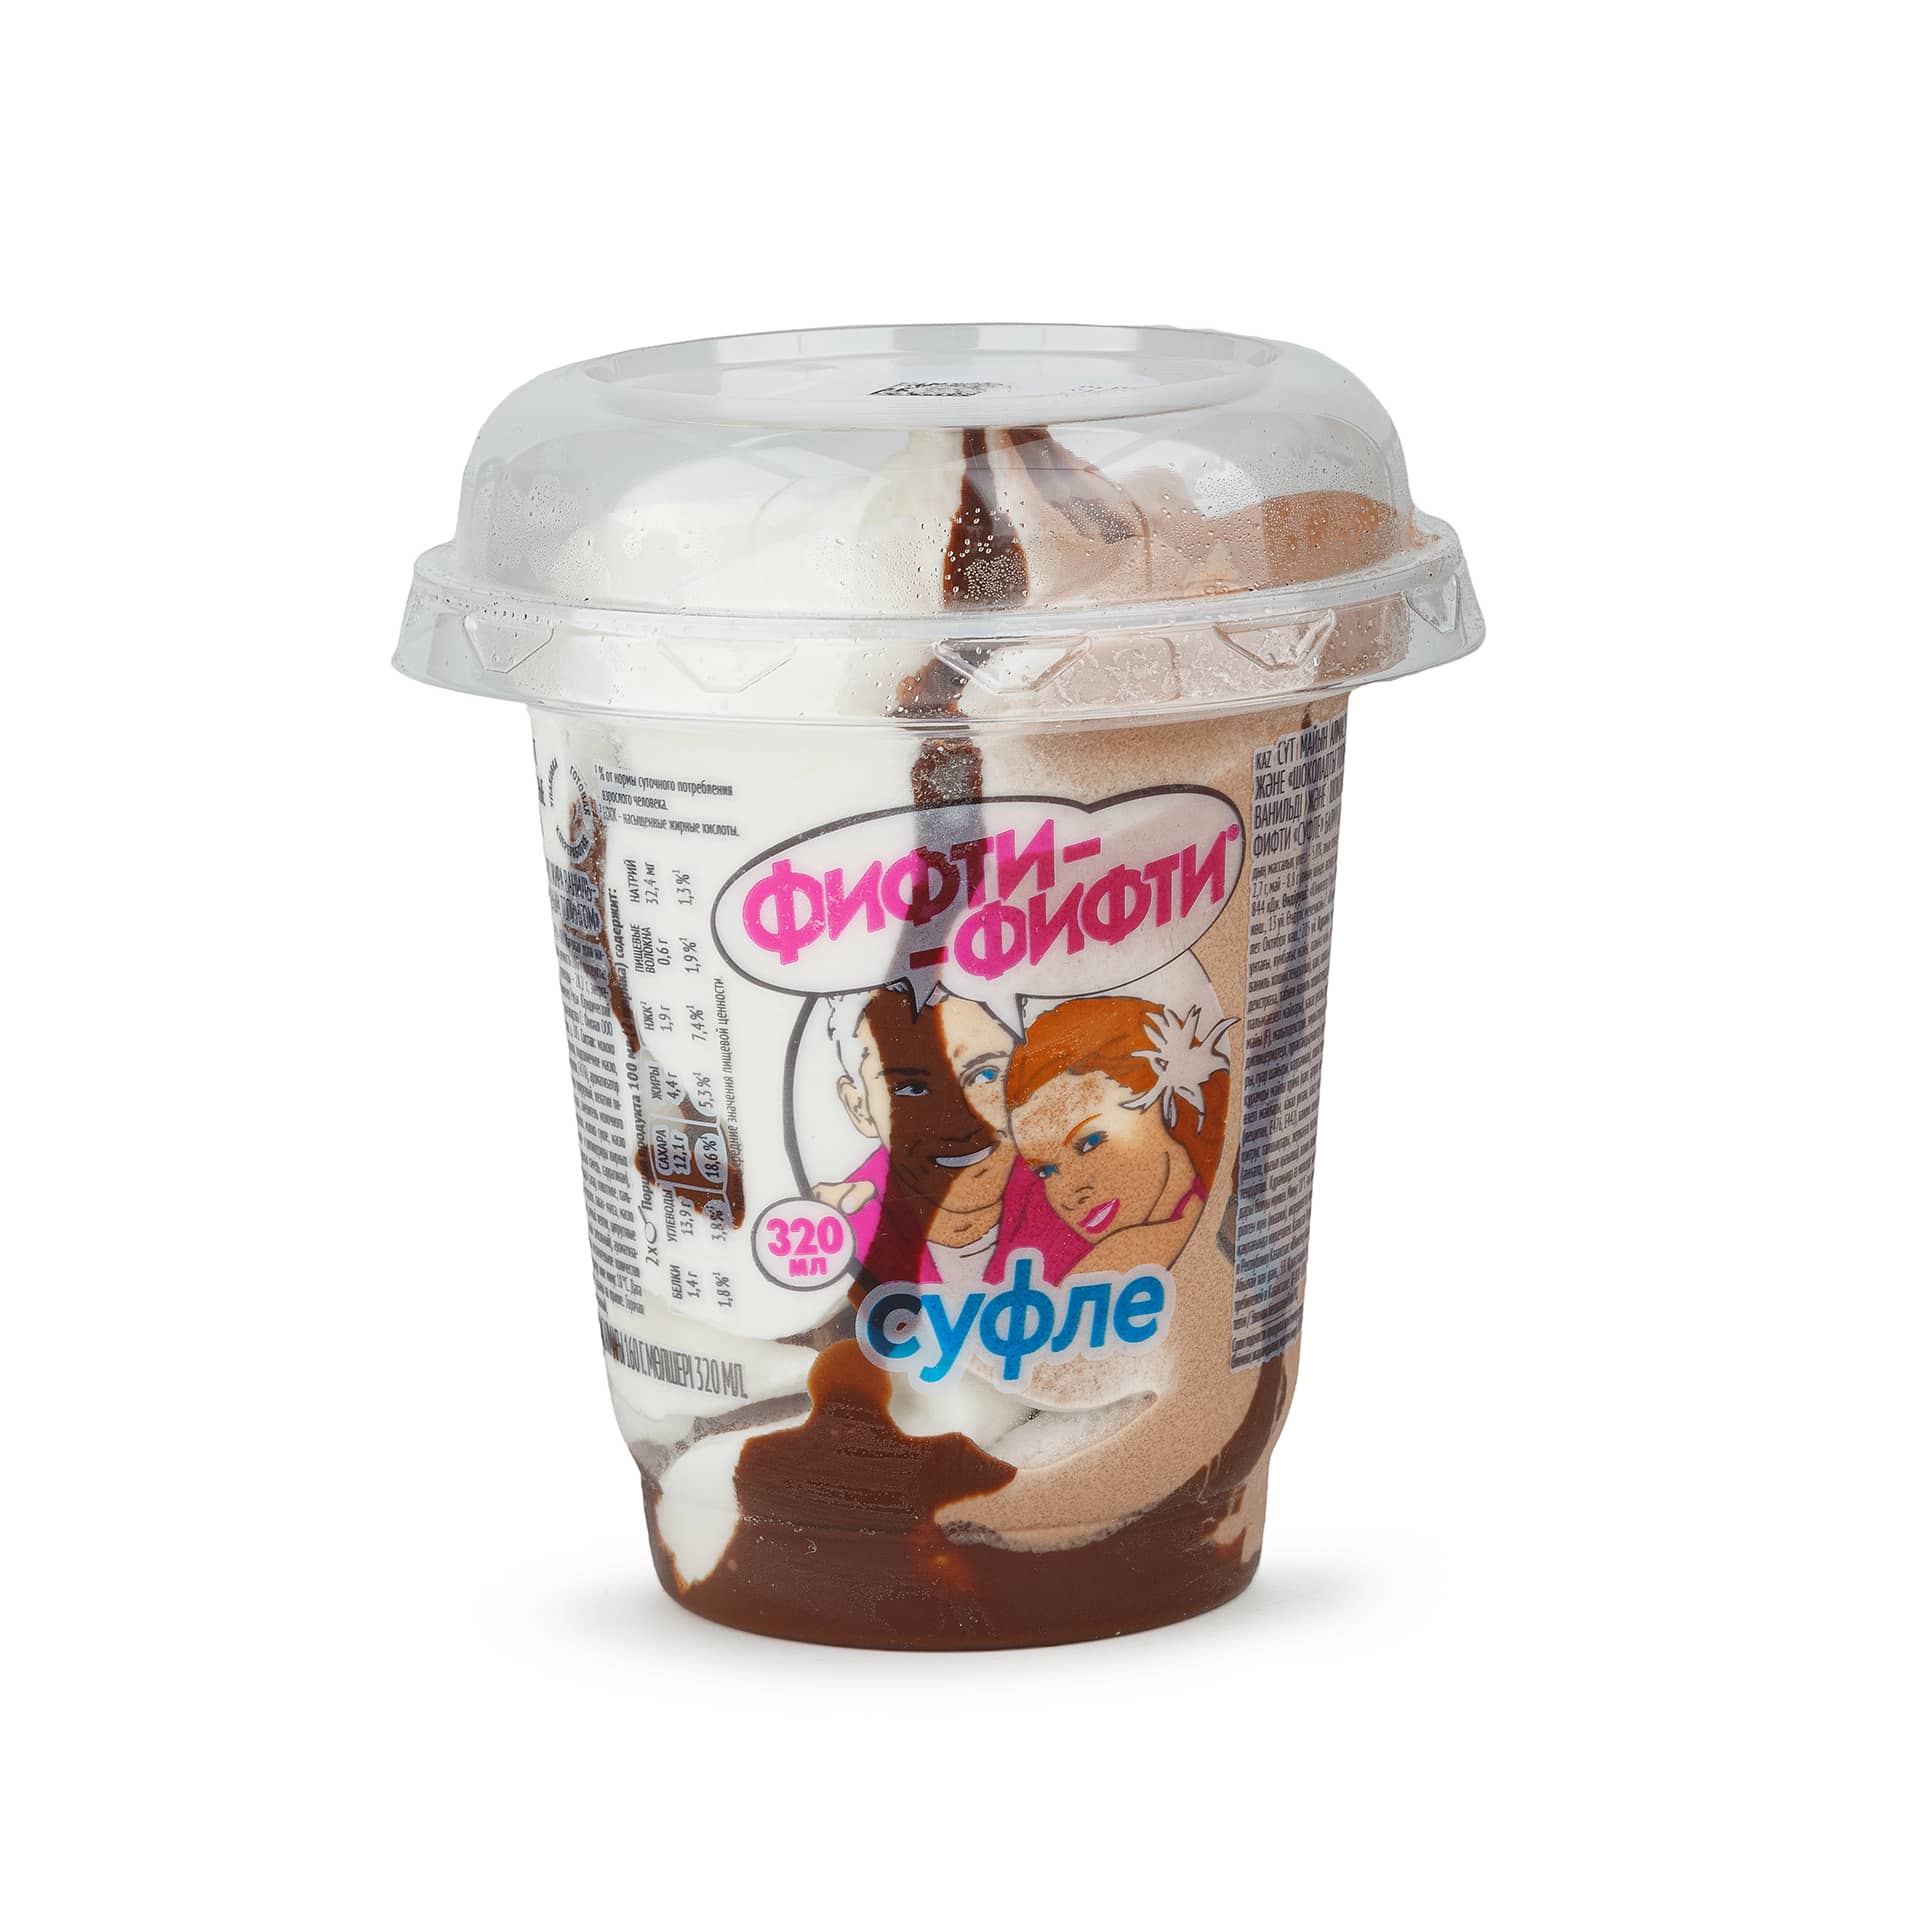 Мороженое ванильное и шоколадное с суфле "Фифти-фифти суфле" Инмарко 160 г 7992LED, общий вид, купить оптом с доставкой по москве и московской области, недорого, низкая цена